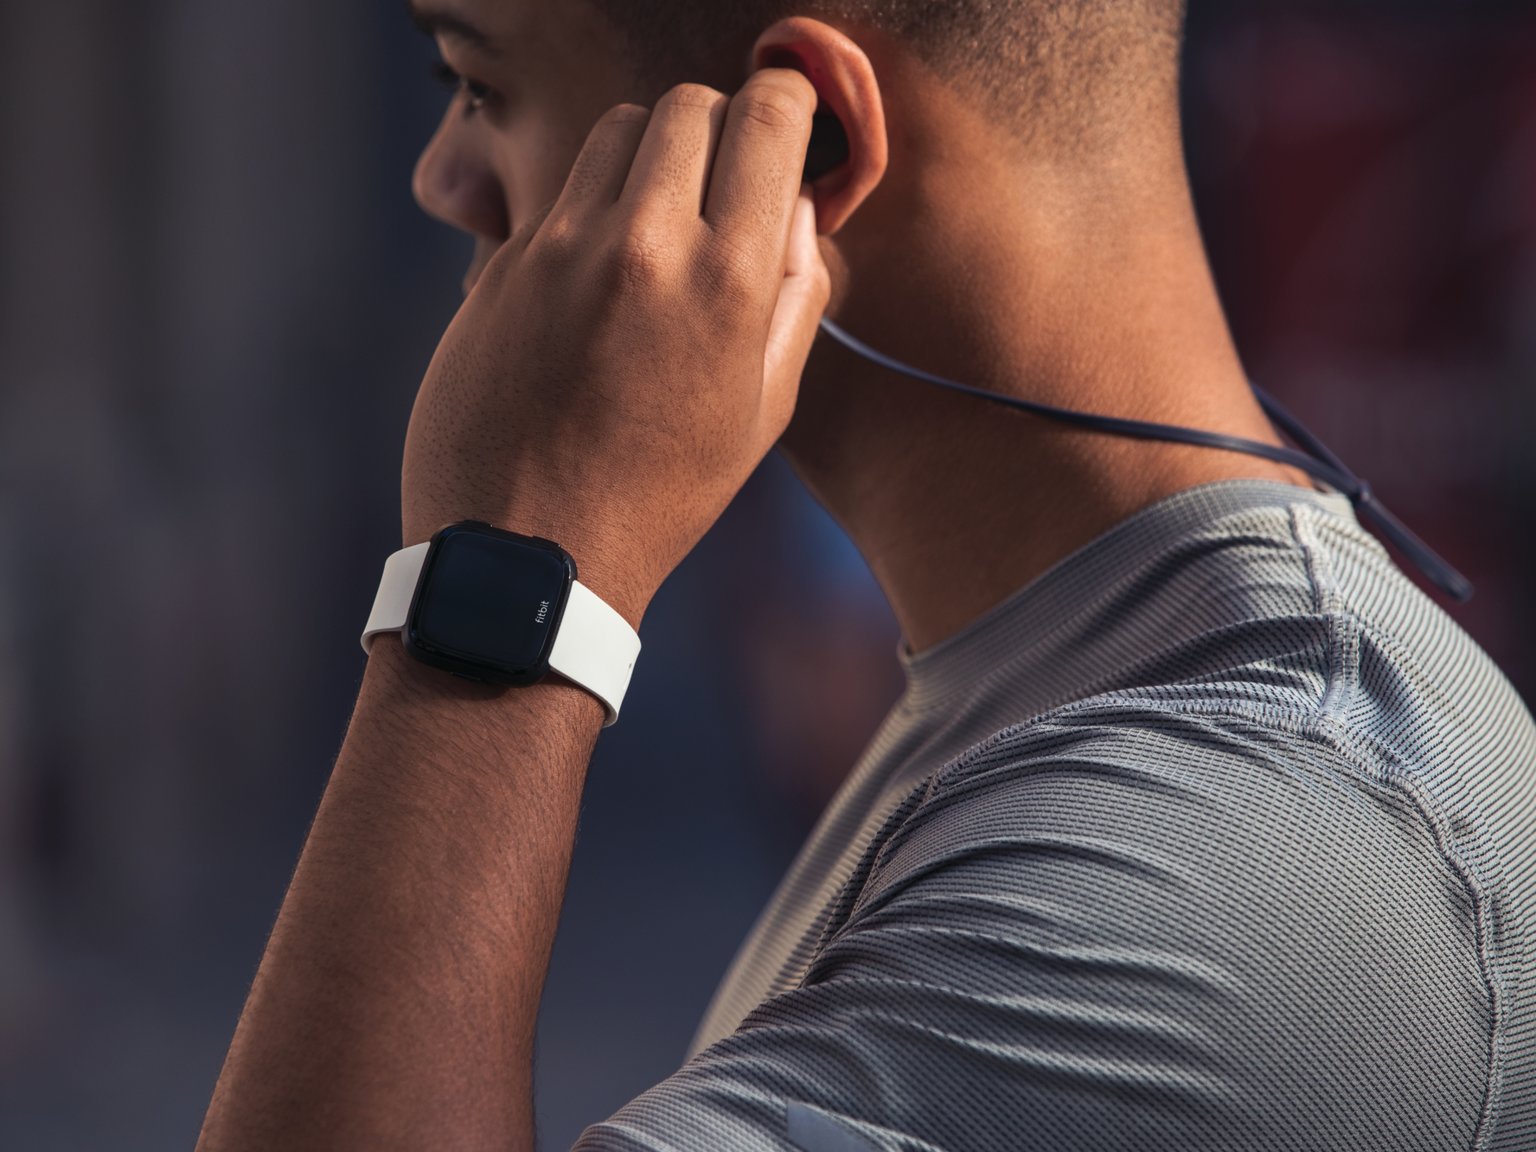 8 причин купить смарт-часы Fitbit вместо Apple Watch